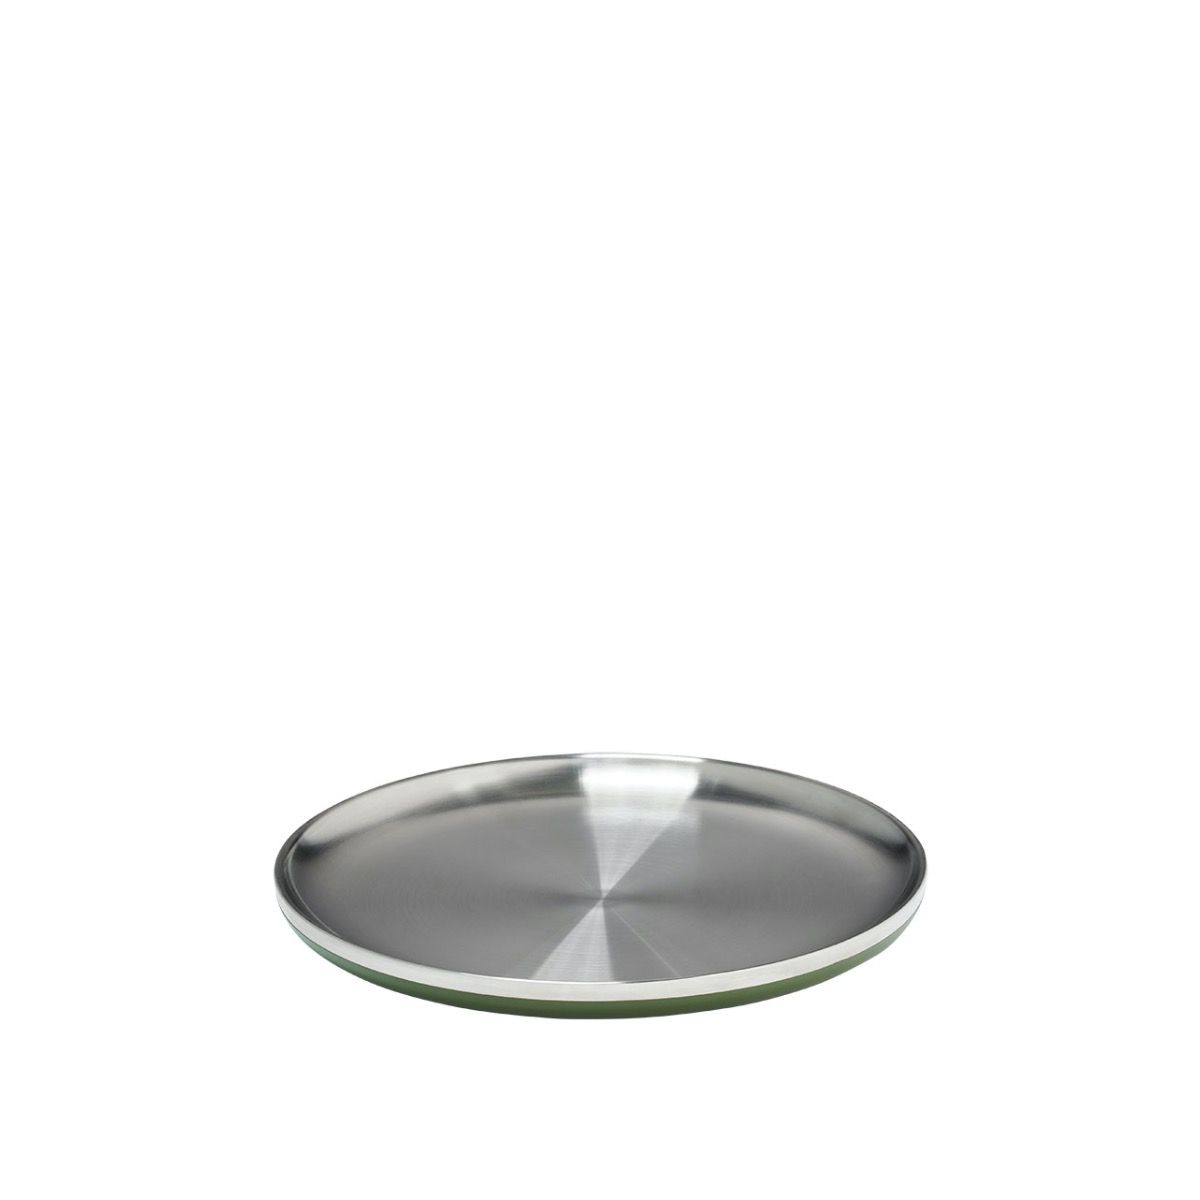 Hydro Flask 1 Quart Bowl w/ Lid - 1 Quart, Olive